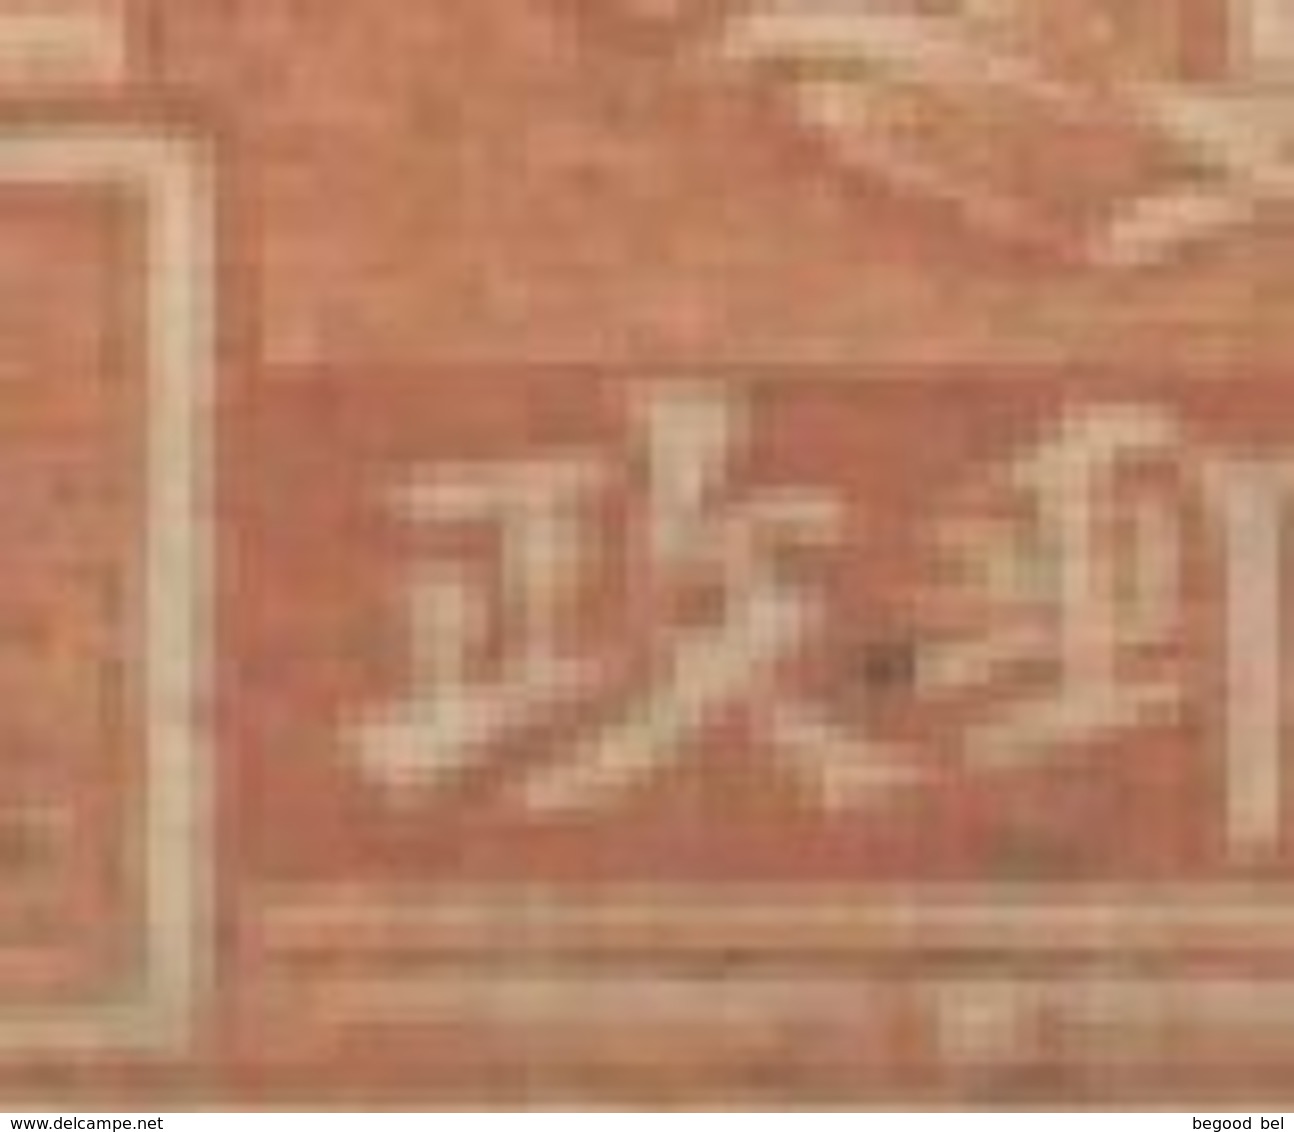 CHINA - 1942 - USED/OBLIT.  - Mi 292  - Lot 21817 - Autres & Non Classés